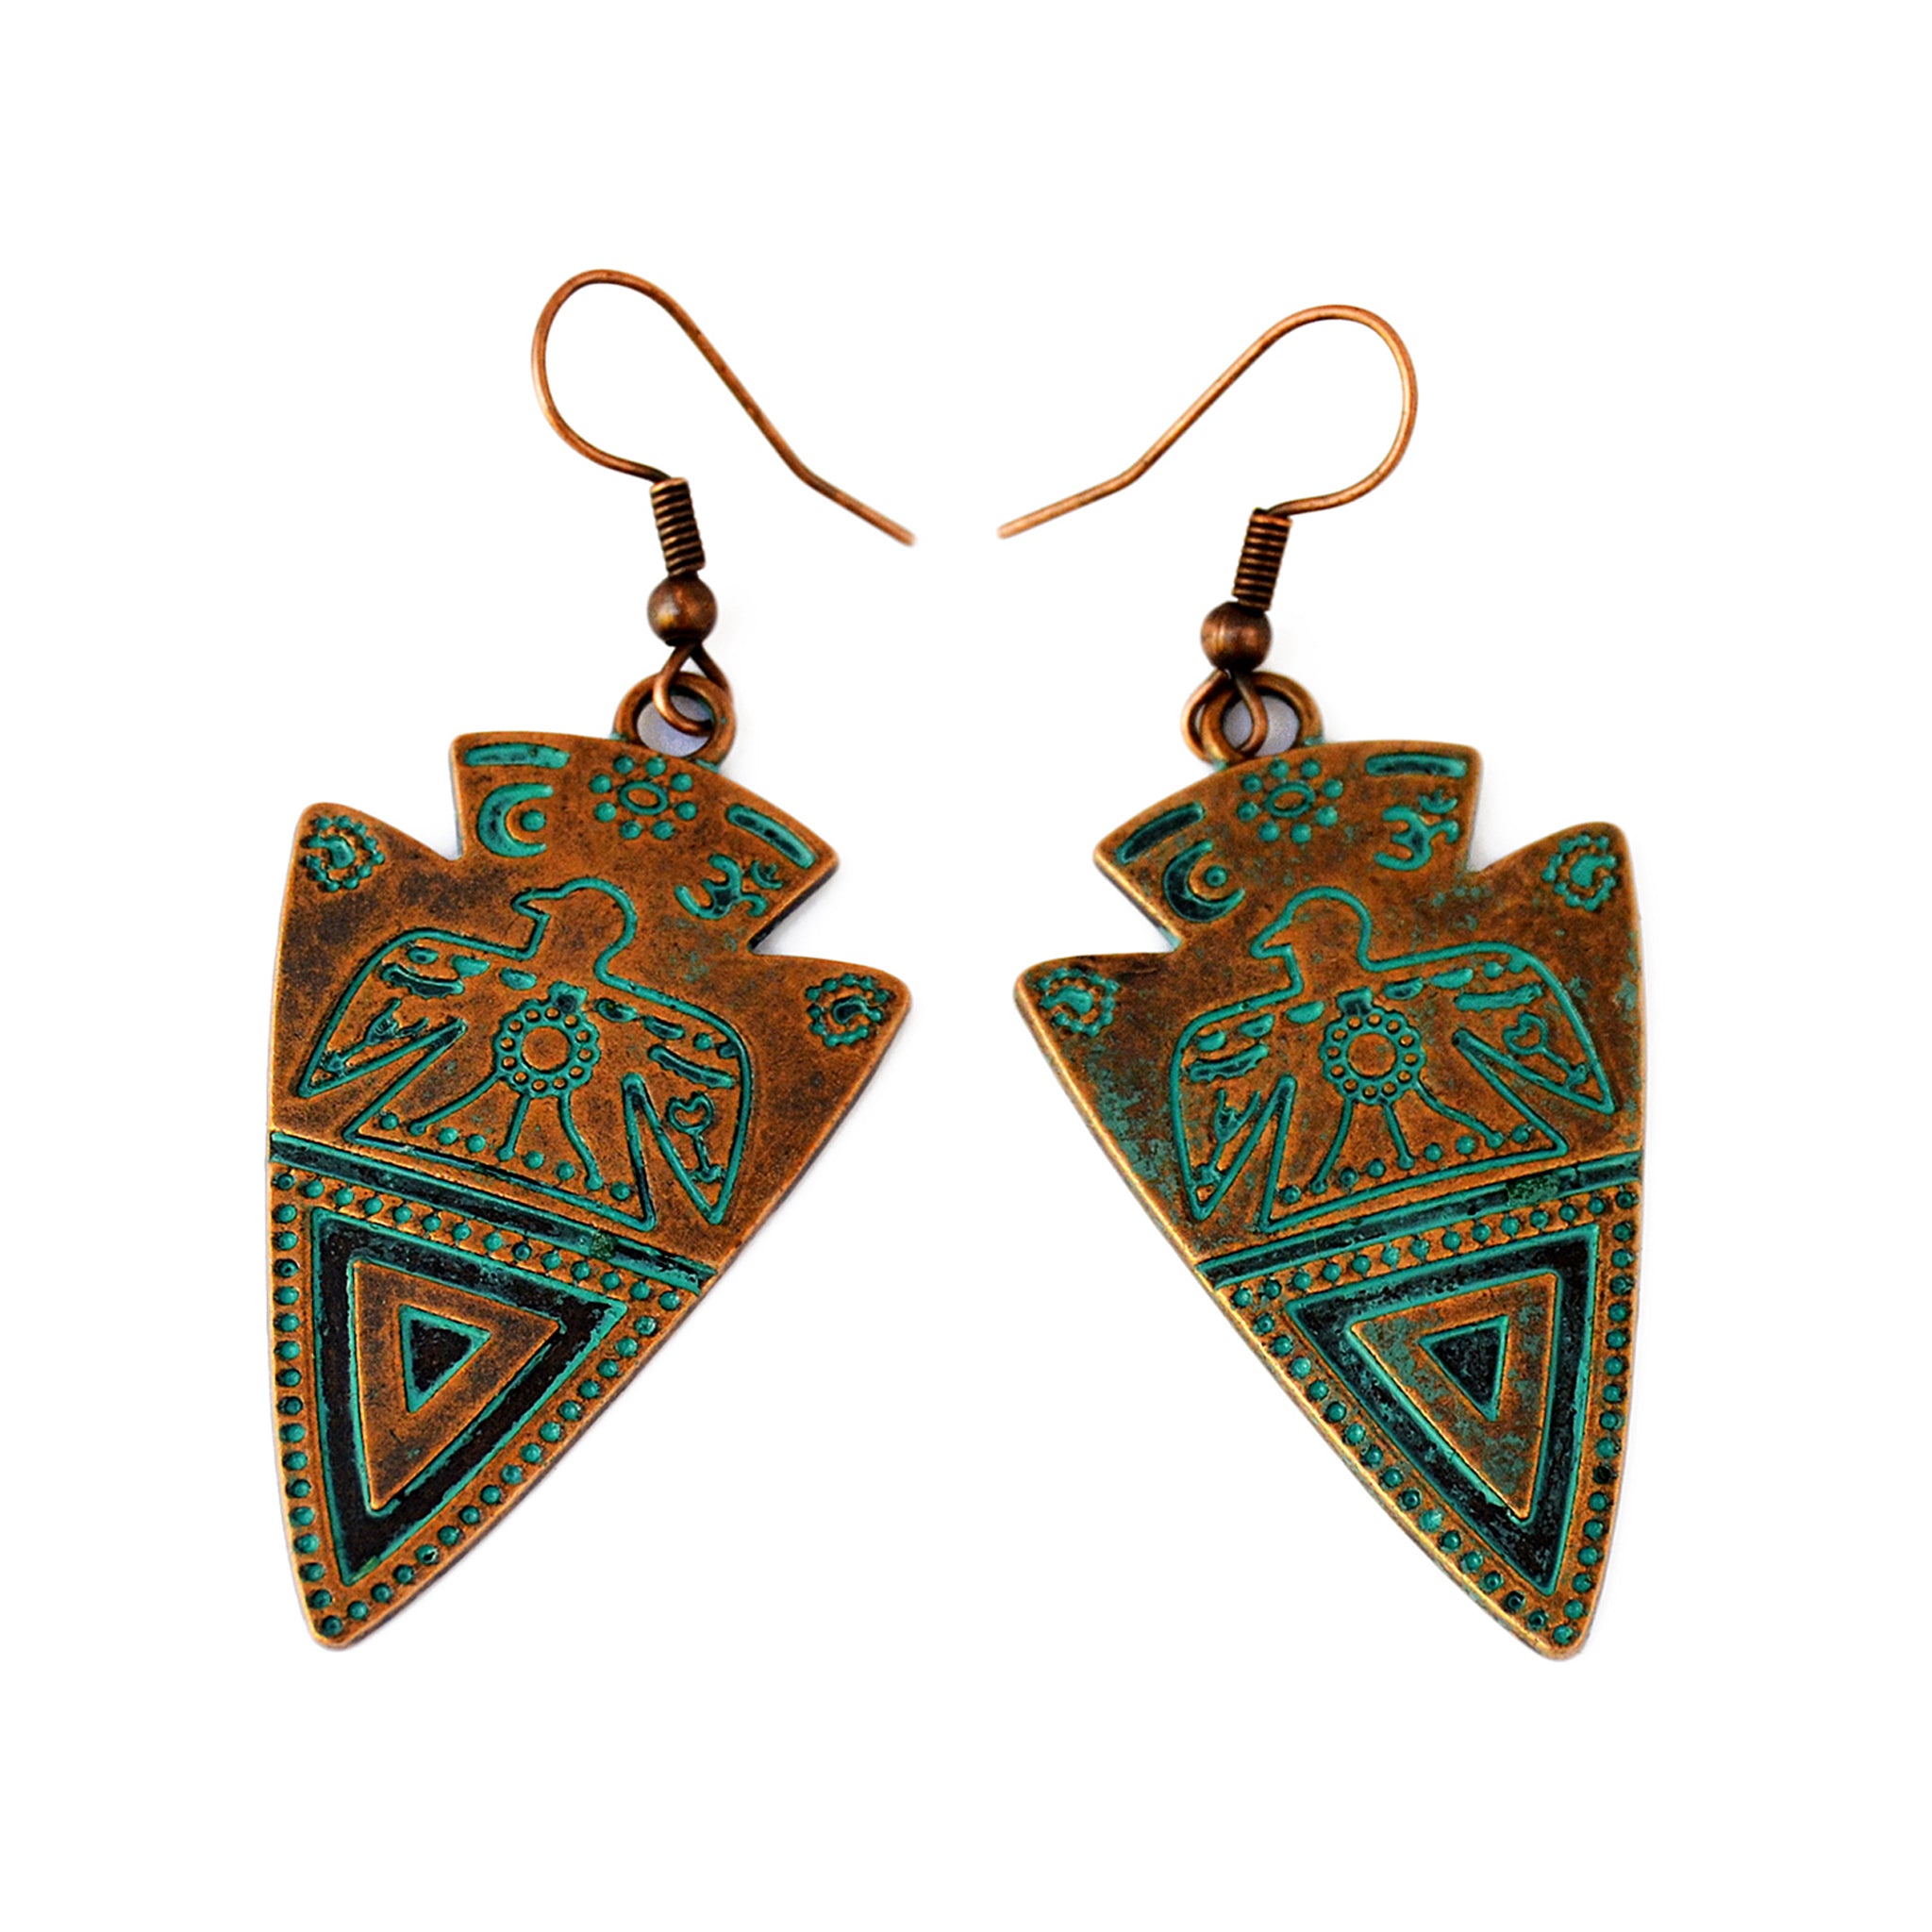 Oxidized copper arrow earrings